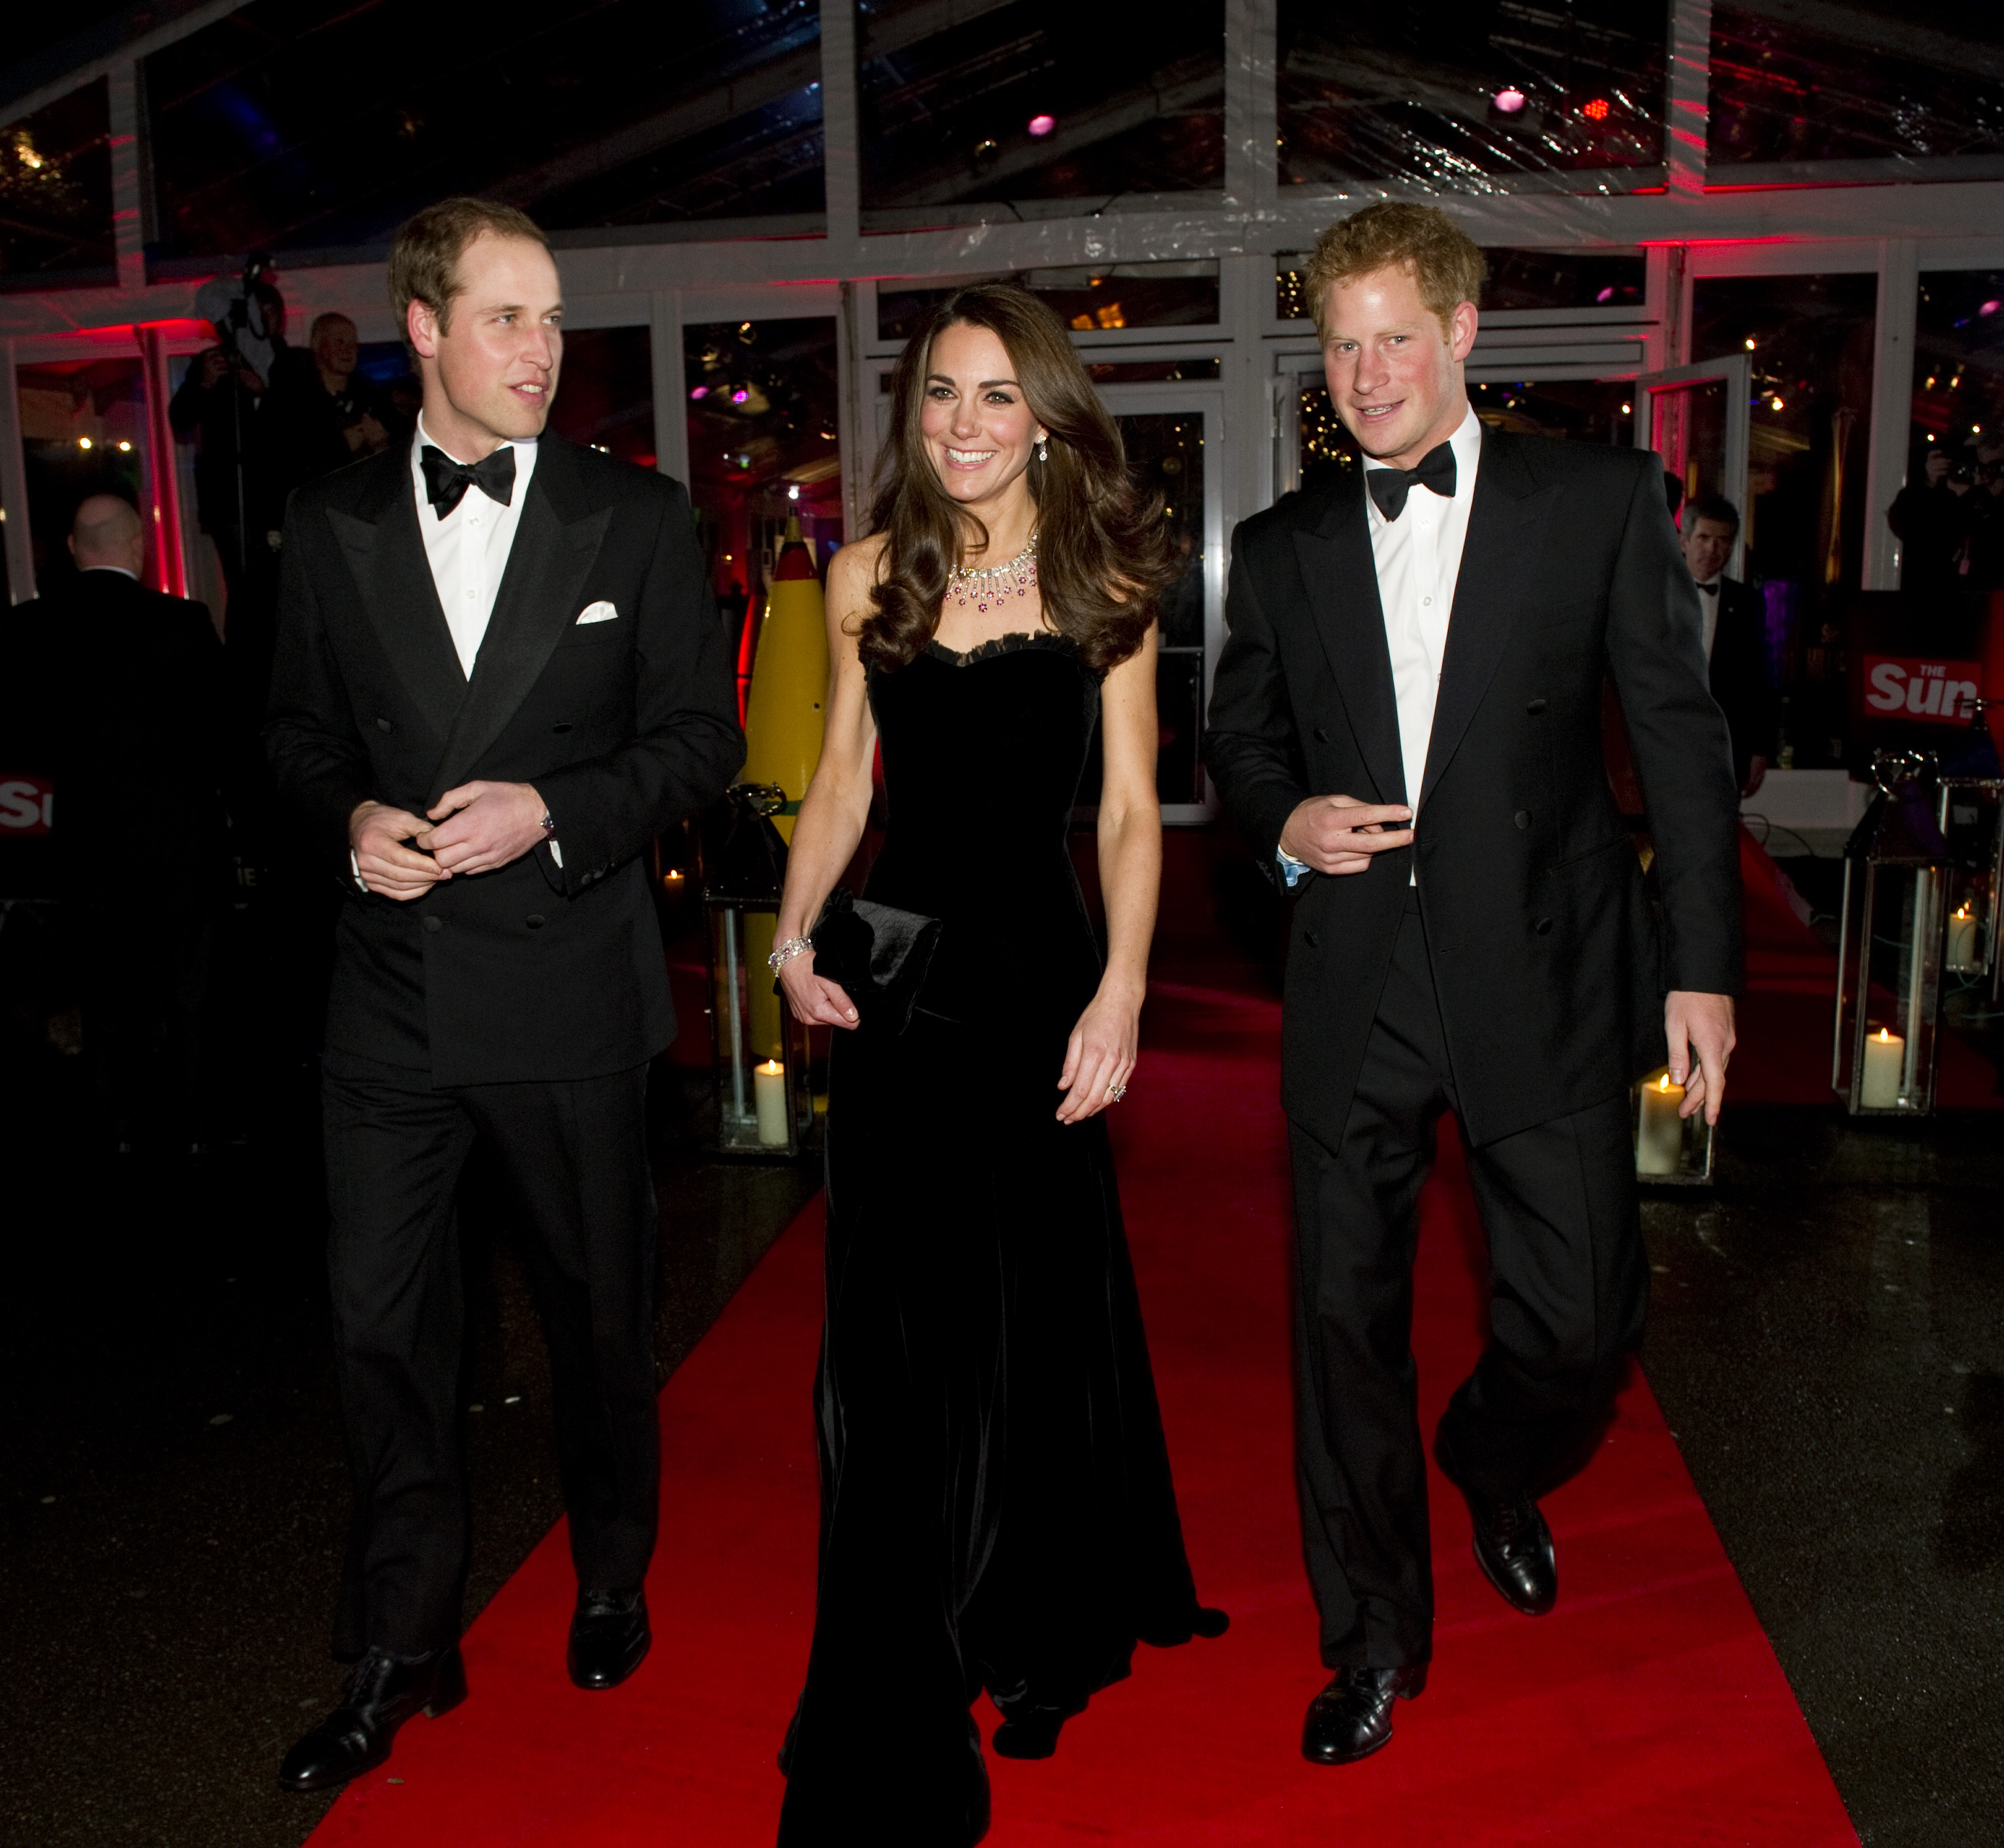 Souvent, les membres de la famille royale organisent un banquet de réveillon en cravate noire